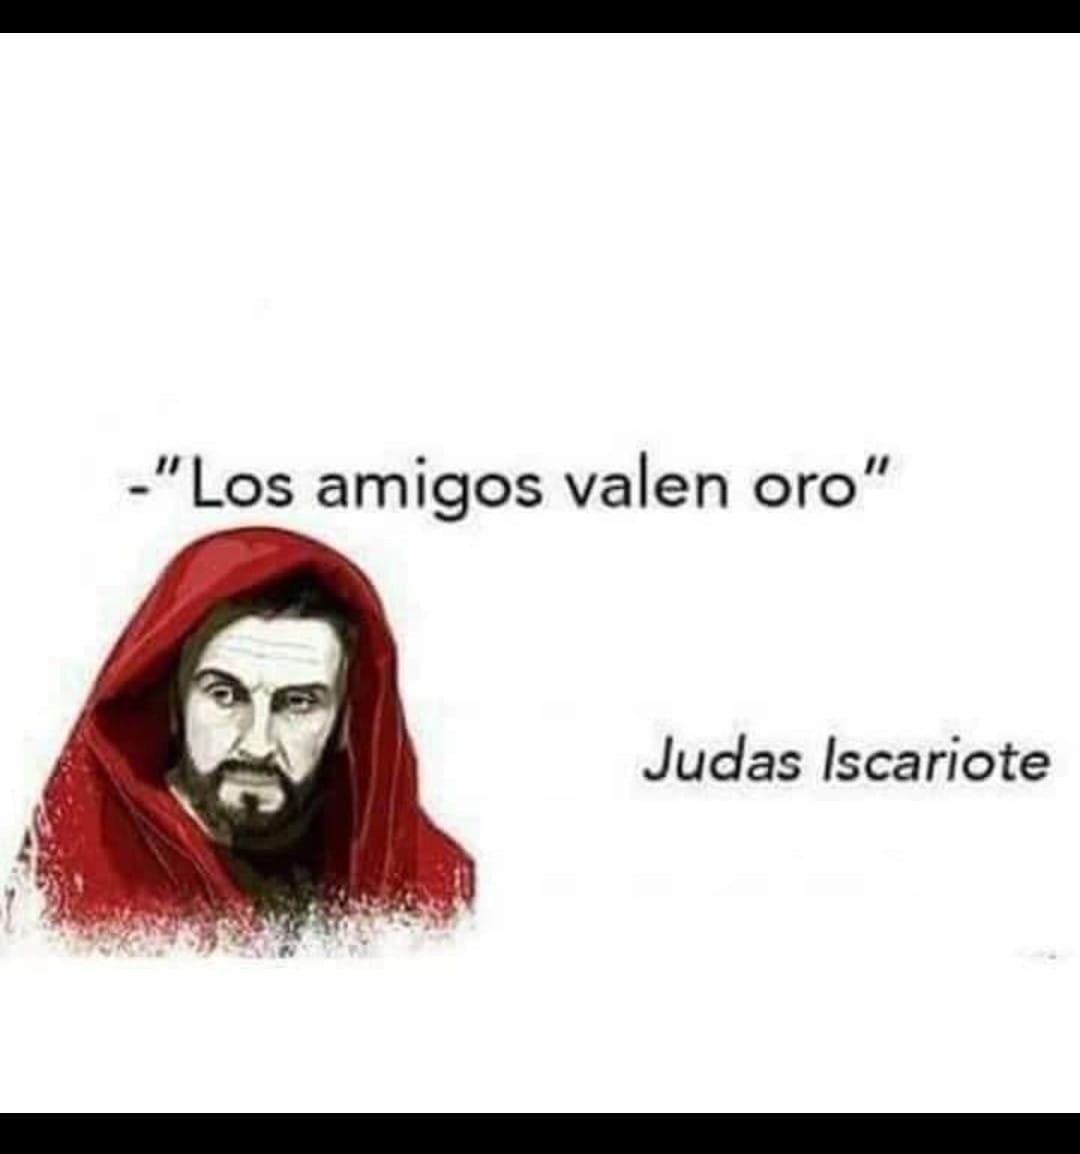 Frases celebres de Judas Iscariote - meme